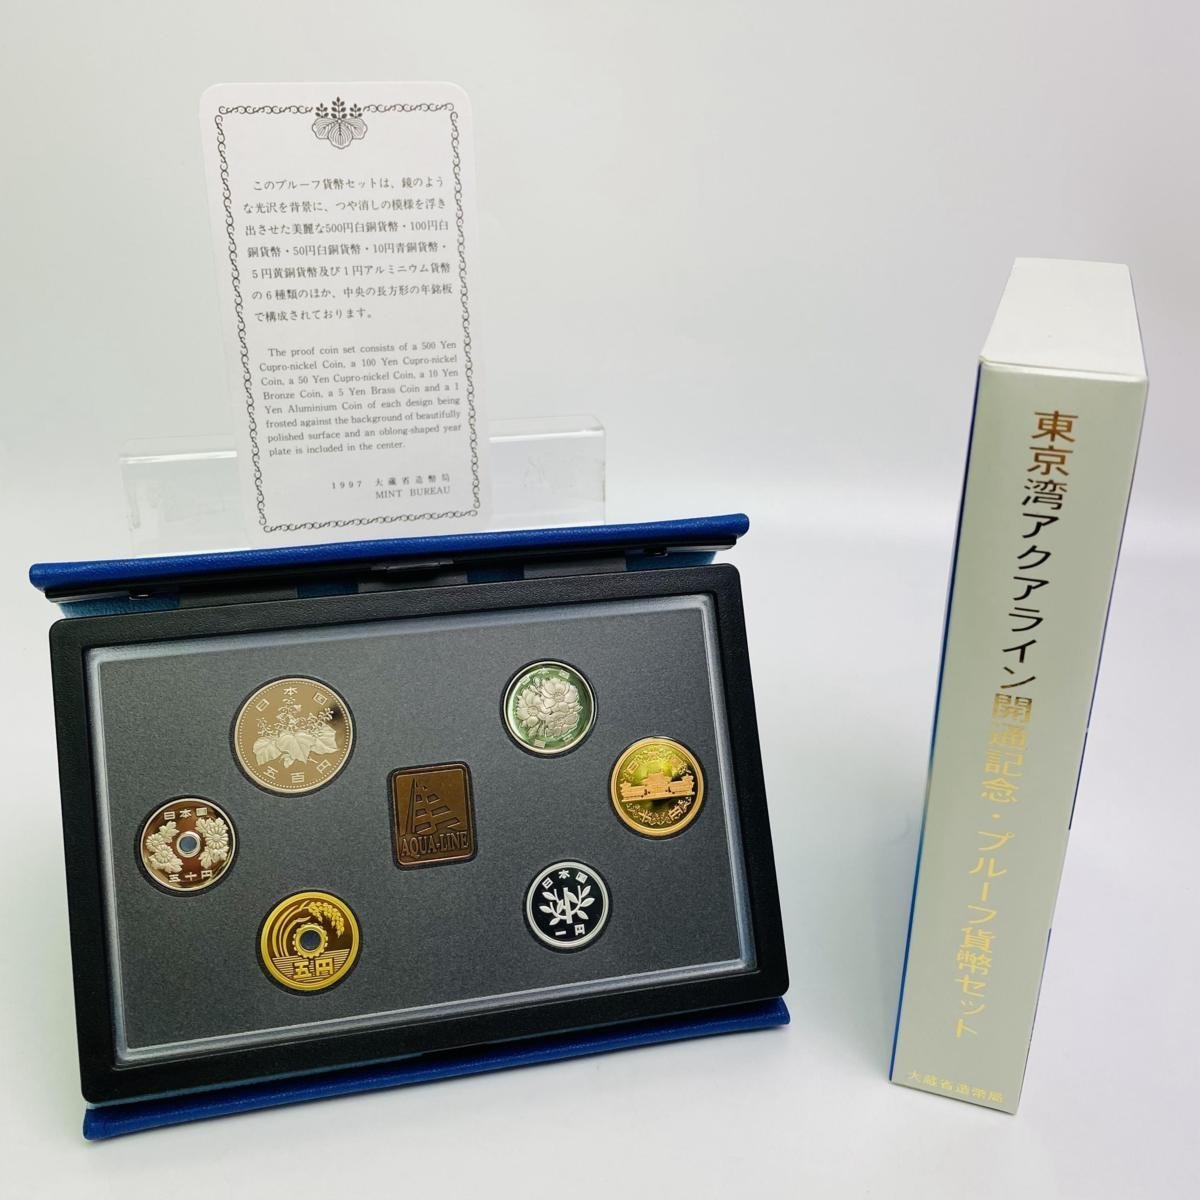 1997年(平成9年) 東京湾アクアライン開通 記念 プルーフ 貨幣セット 額面合計666円 美品 硬貨未使用 造幣局 同梱可 